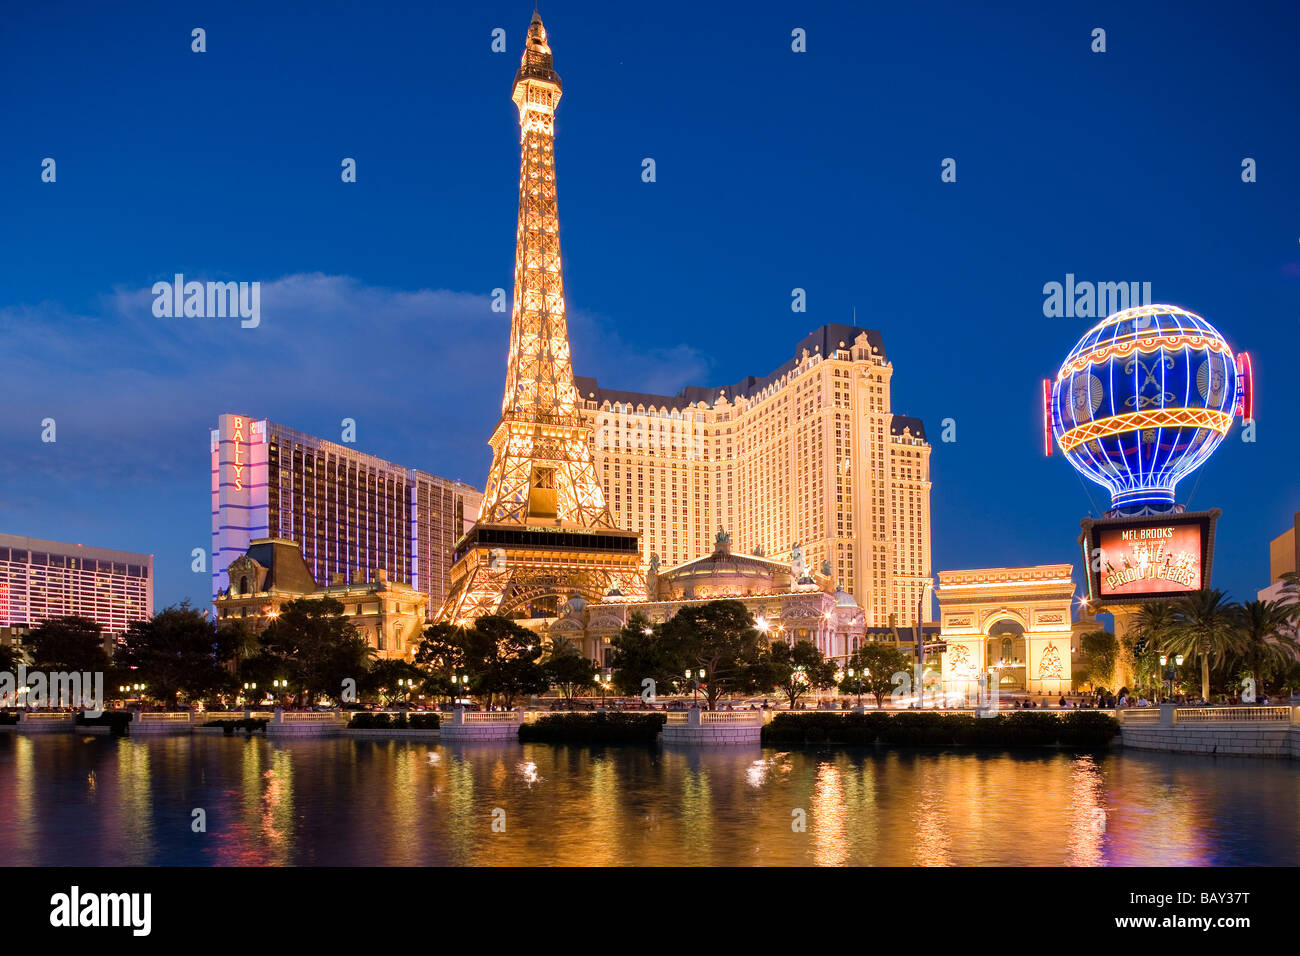 DSC03832, Paris Hotel, Las Vegas, Nevada, Exterior of the P…